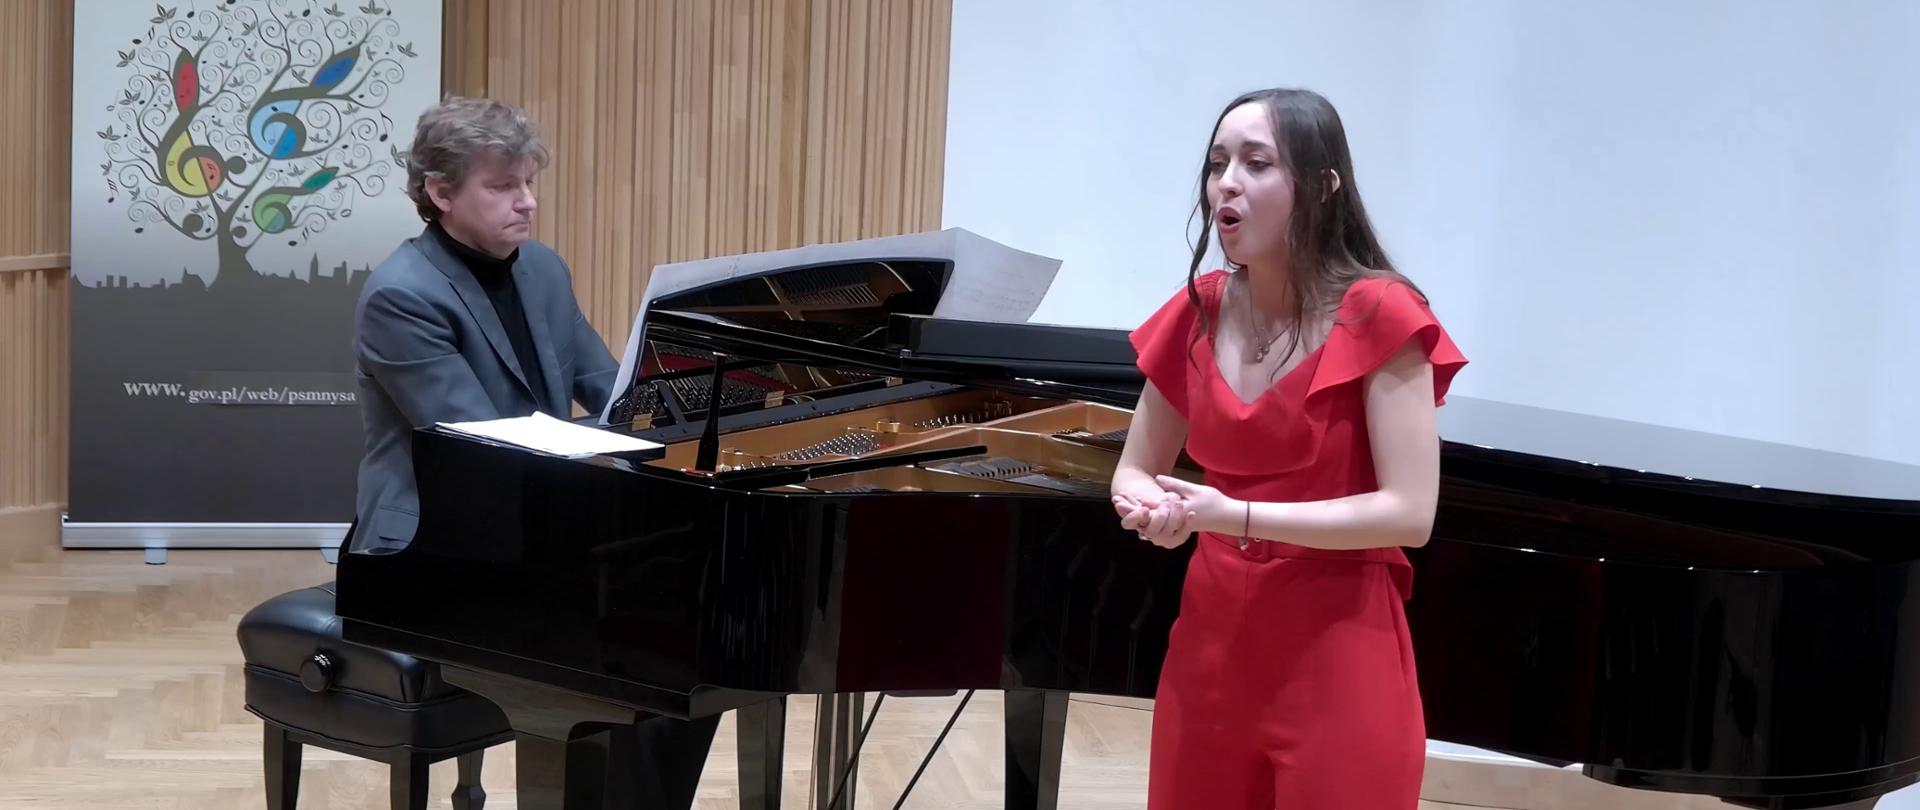 Zdjęcie. Na estradzie występuje ubrana w czerwony strój śpiewaczka z towarzyszeniem pianisty, który gra na dużym czarnym fortepianie. W głębi z lewej strony widać baner PSM Nysa.